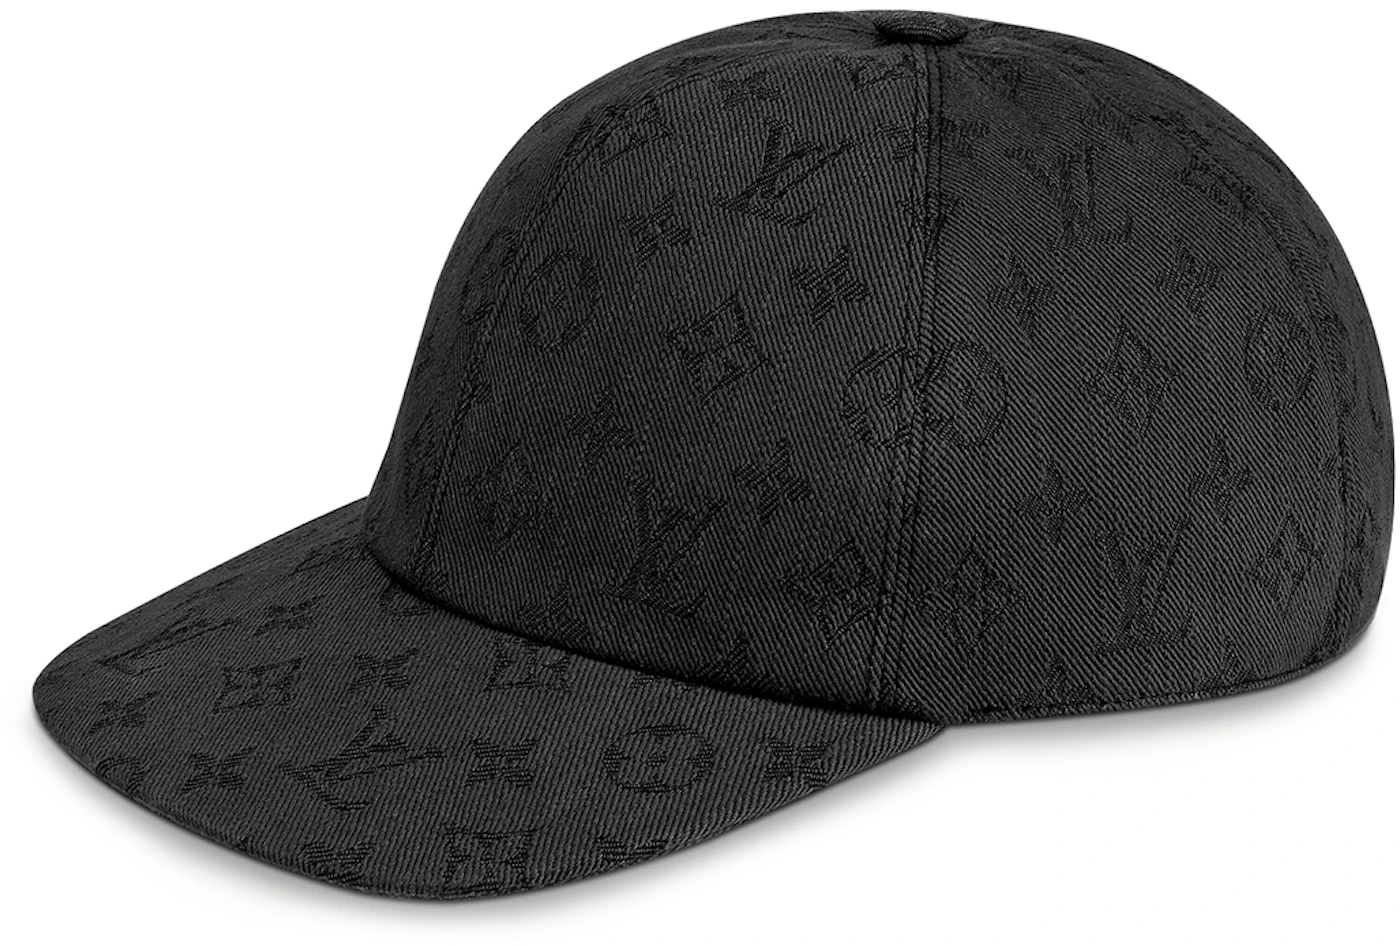 Louis Vuitton Monogram Essential Leather Strapback Cap Black